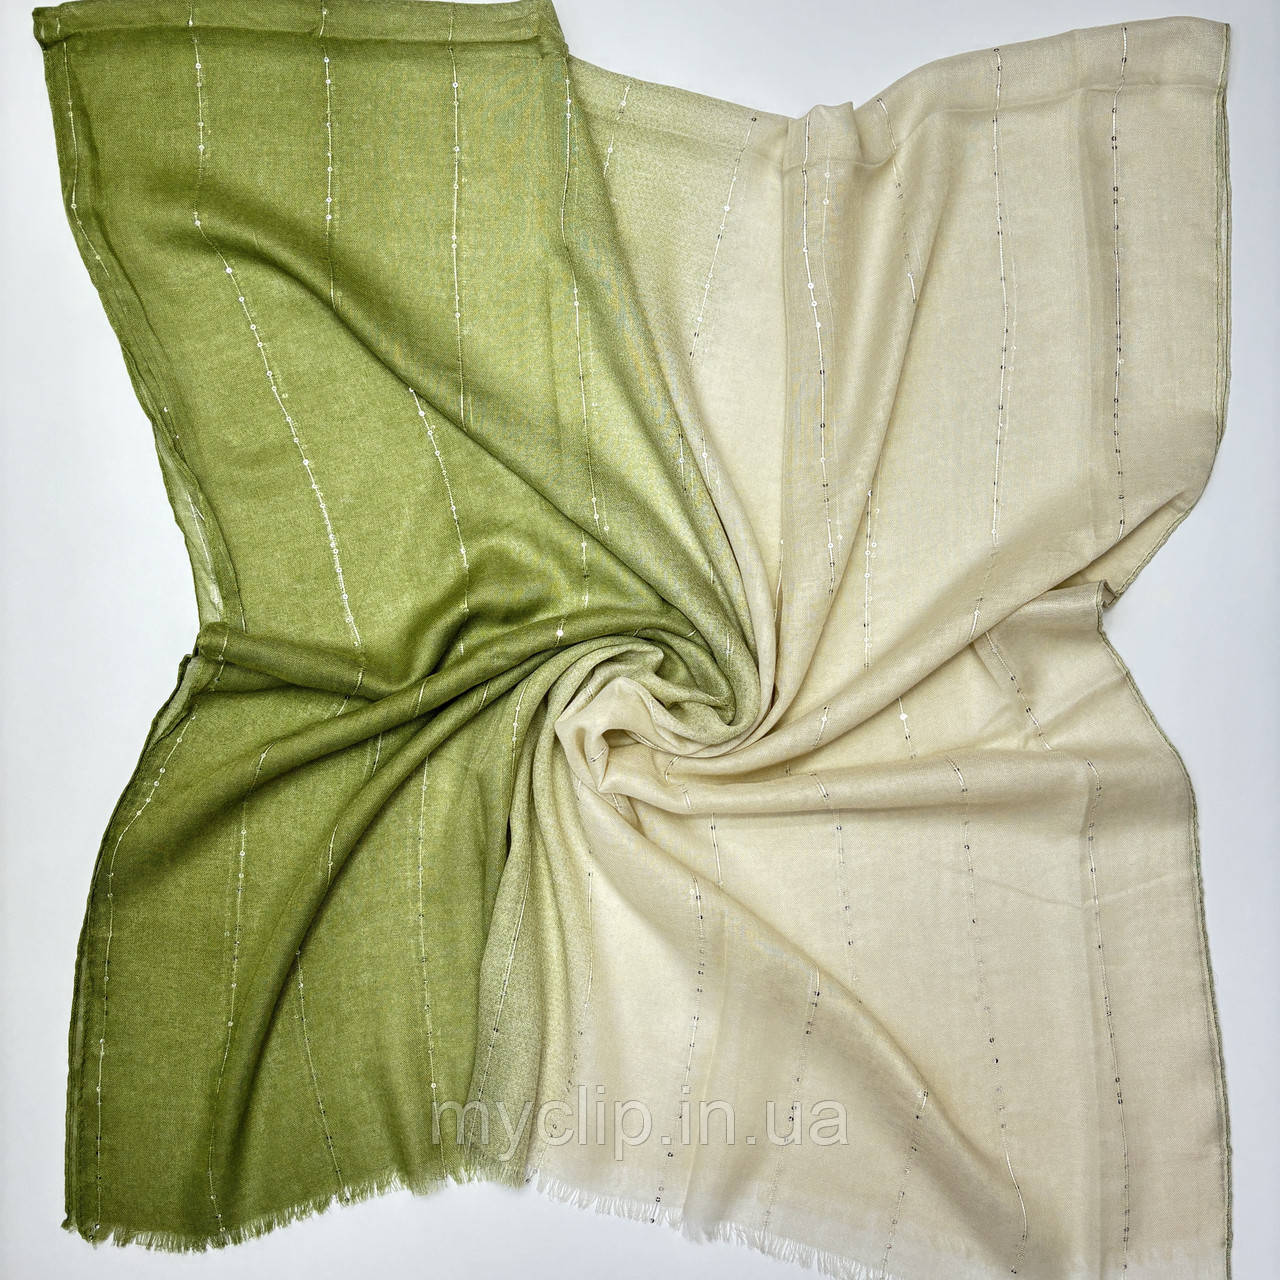 Жіночий однотонний палантин шарф з переходом кольору. Турецький м'який шарф з пайєтками із натуральної тканини